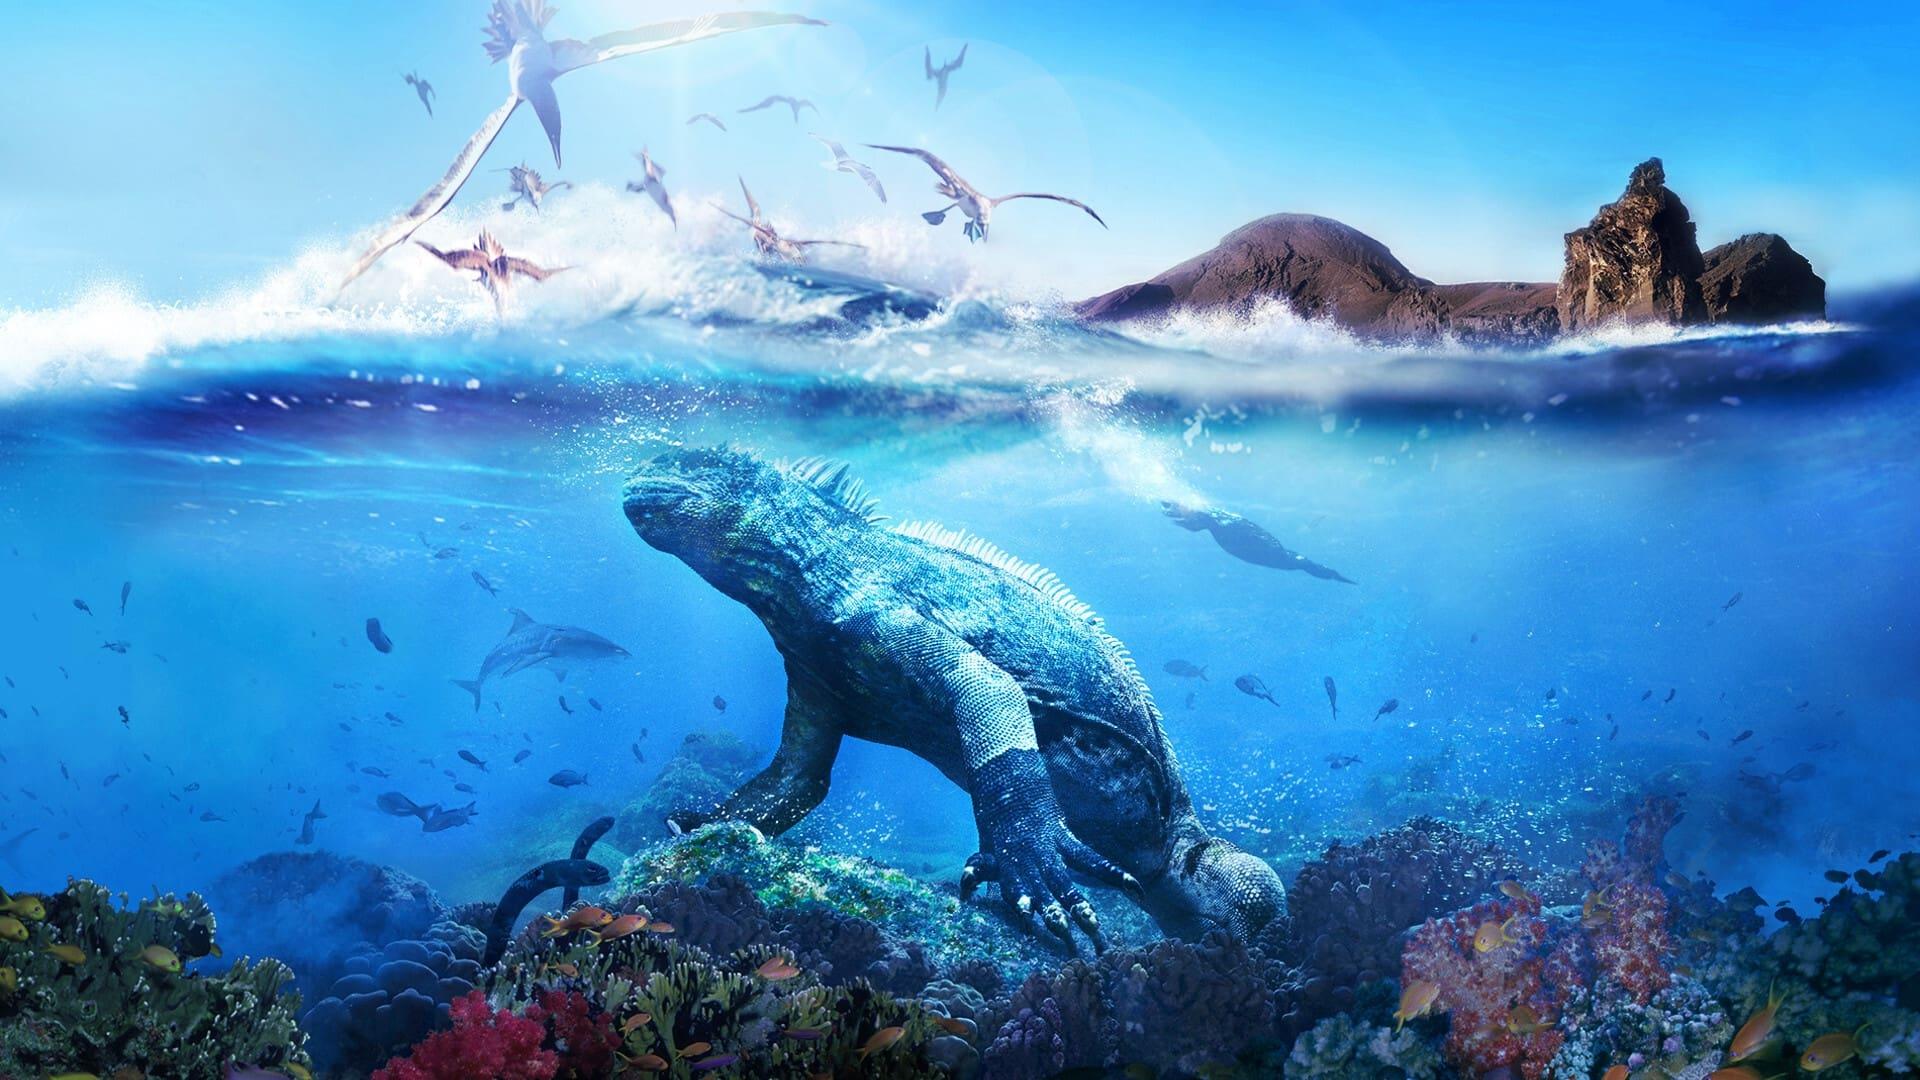 Galapagos backdrop